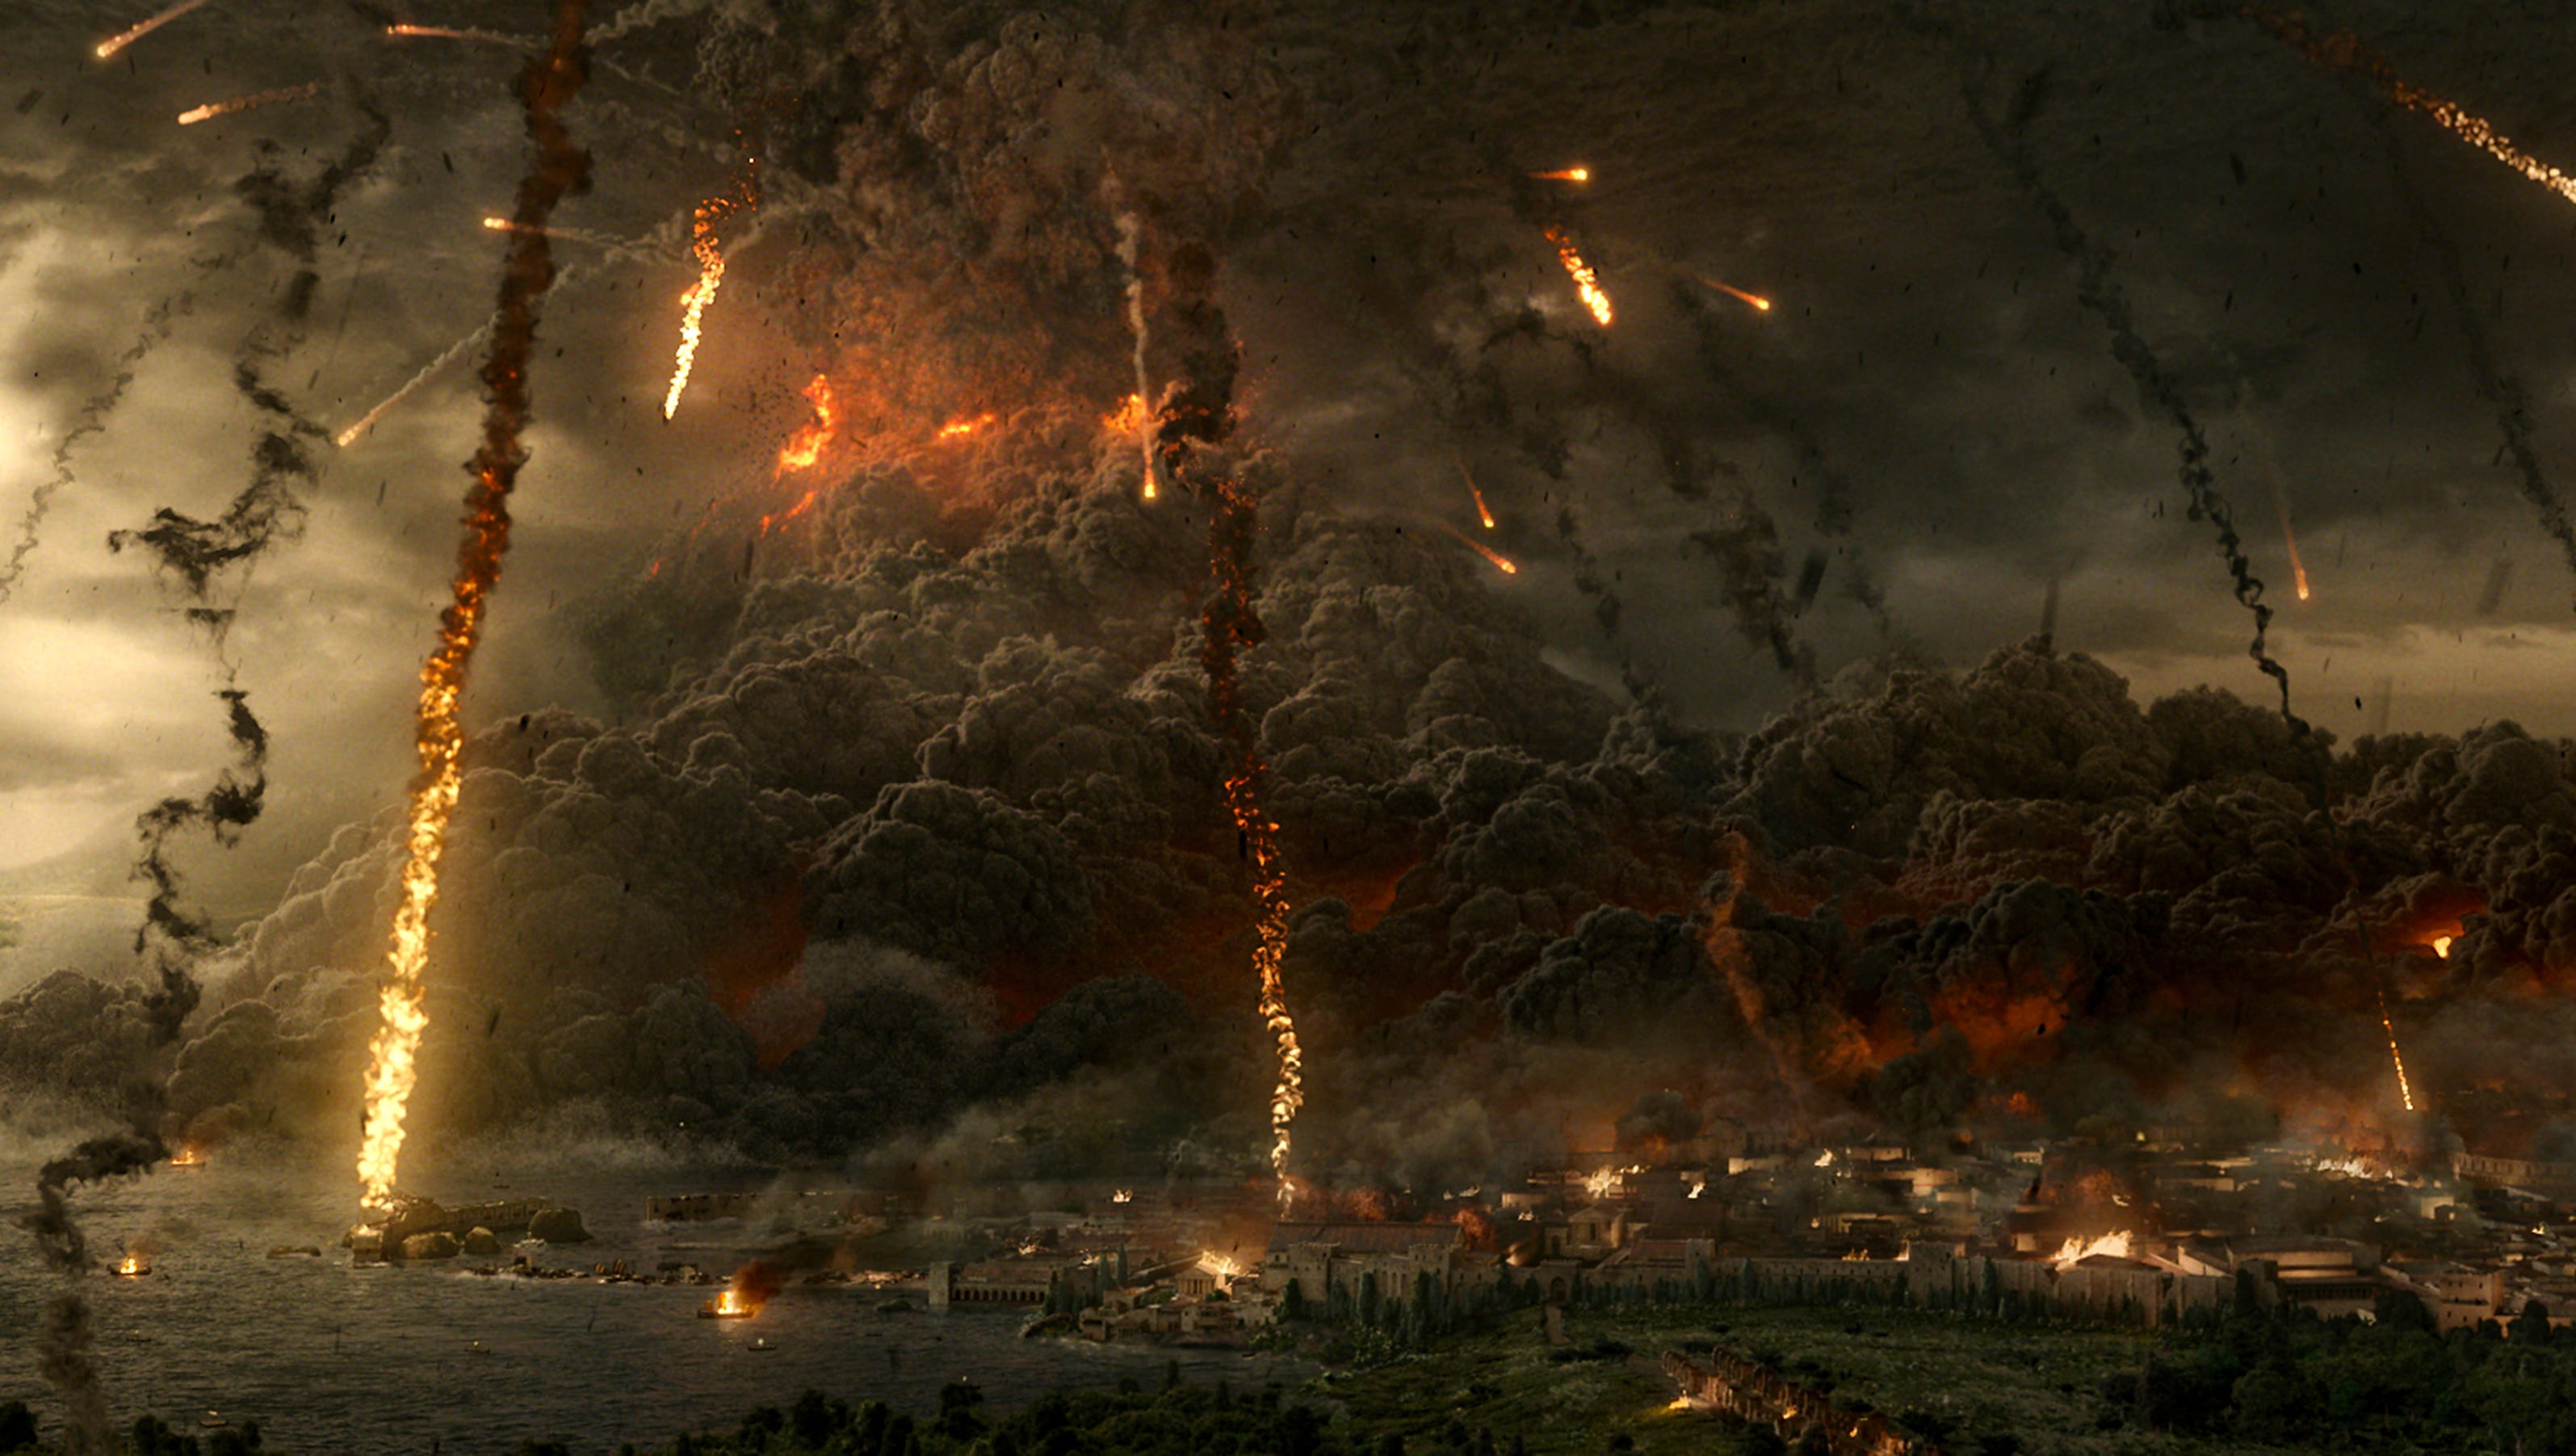 Опять конец света. Помпеи: апокалипсис (Apocalypse Pompeii) 2014. Конец света 2020 апокалипсис.